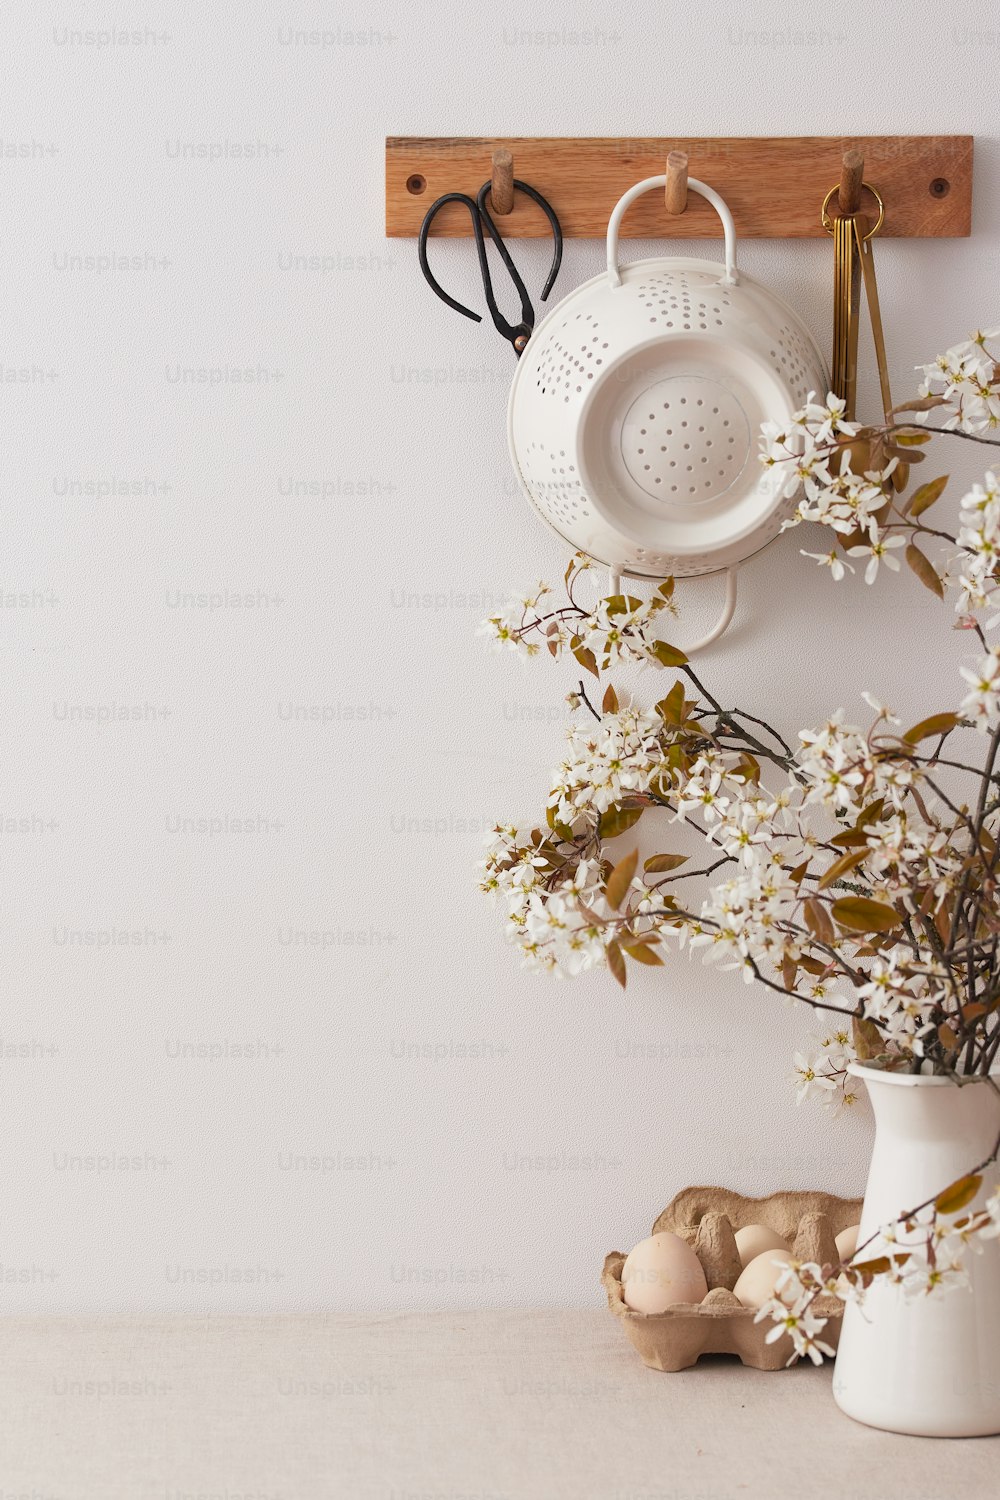 un vaso bianco con fiori e un paio di forbici